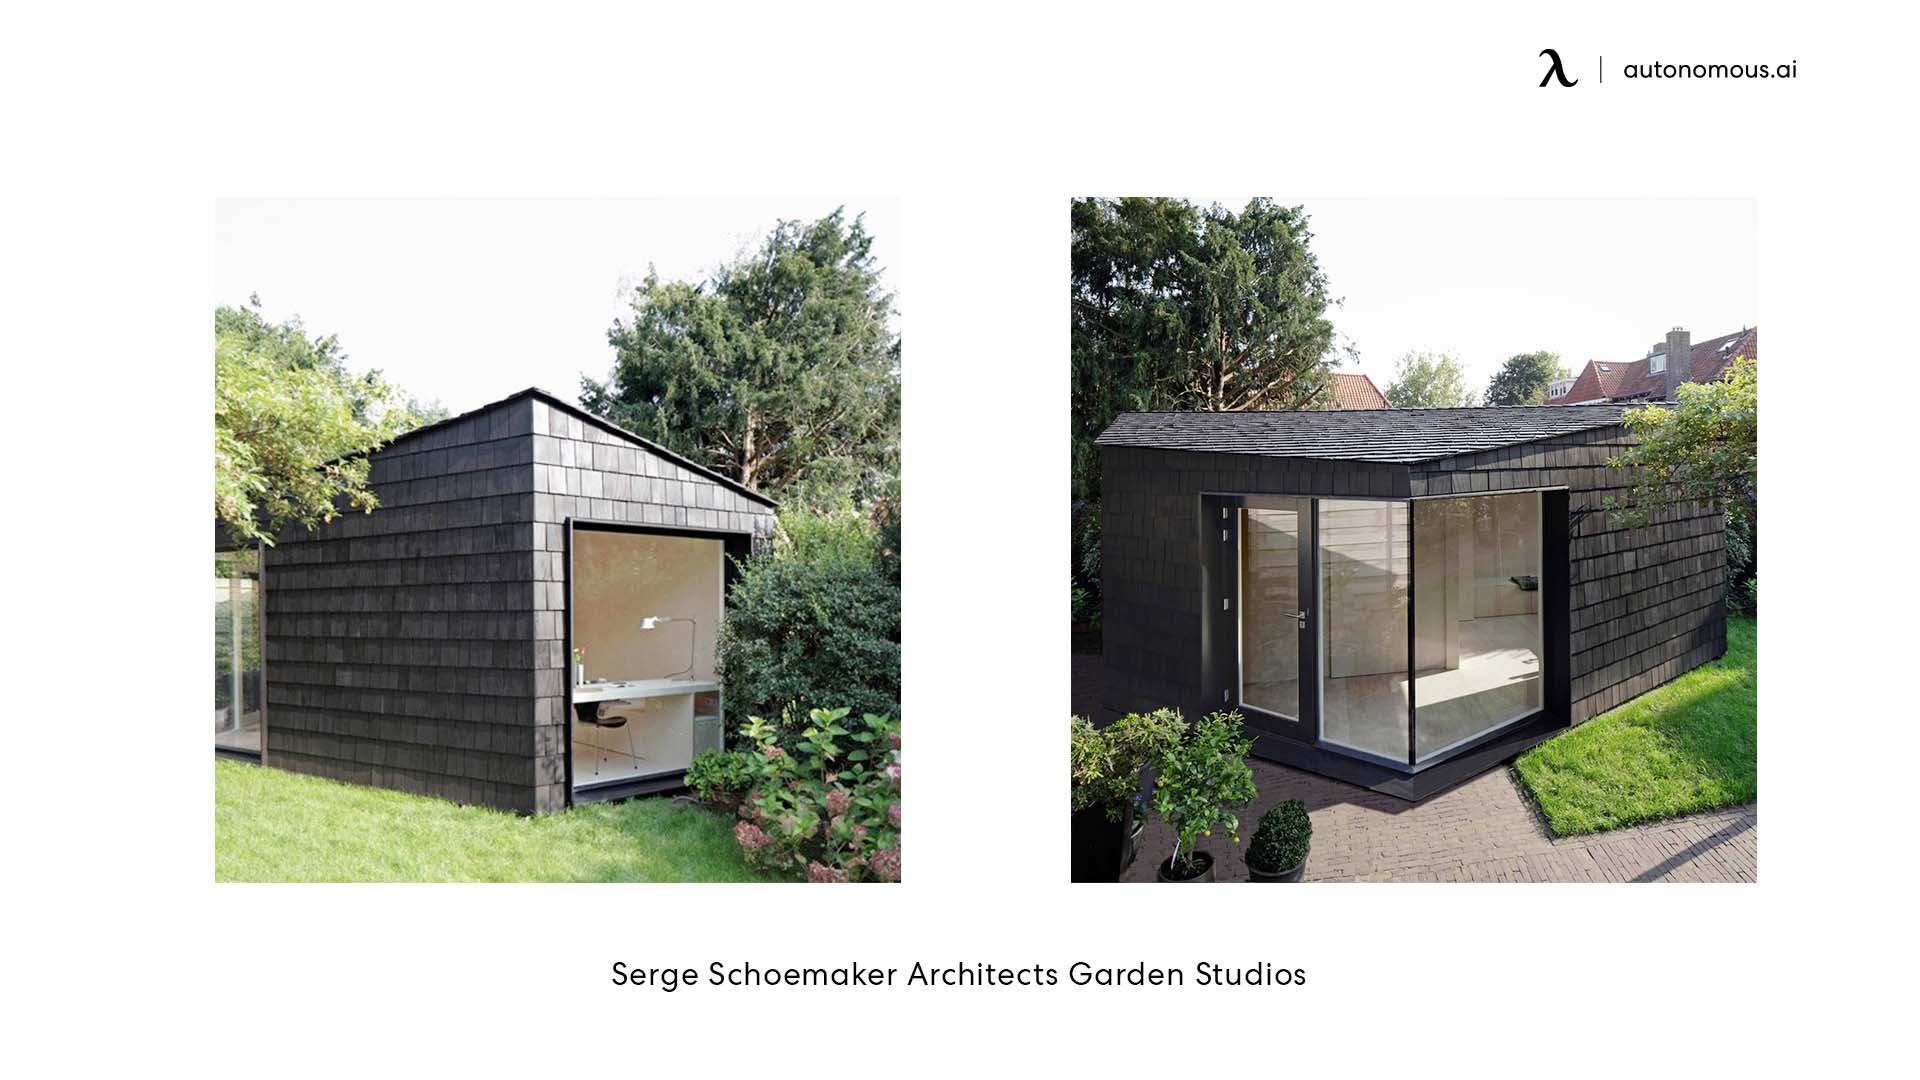 Serge Schoemaker Architects Garden Studios